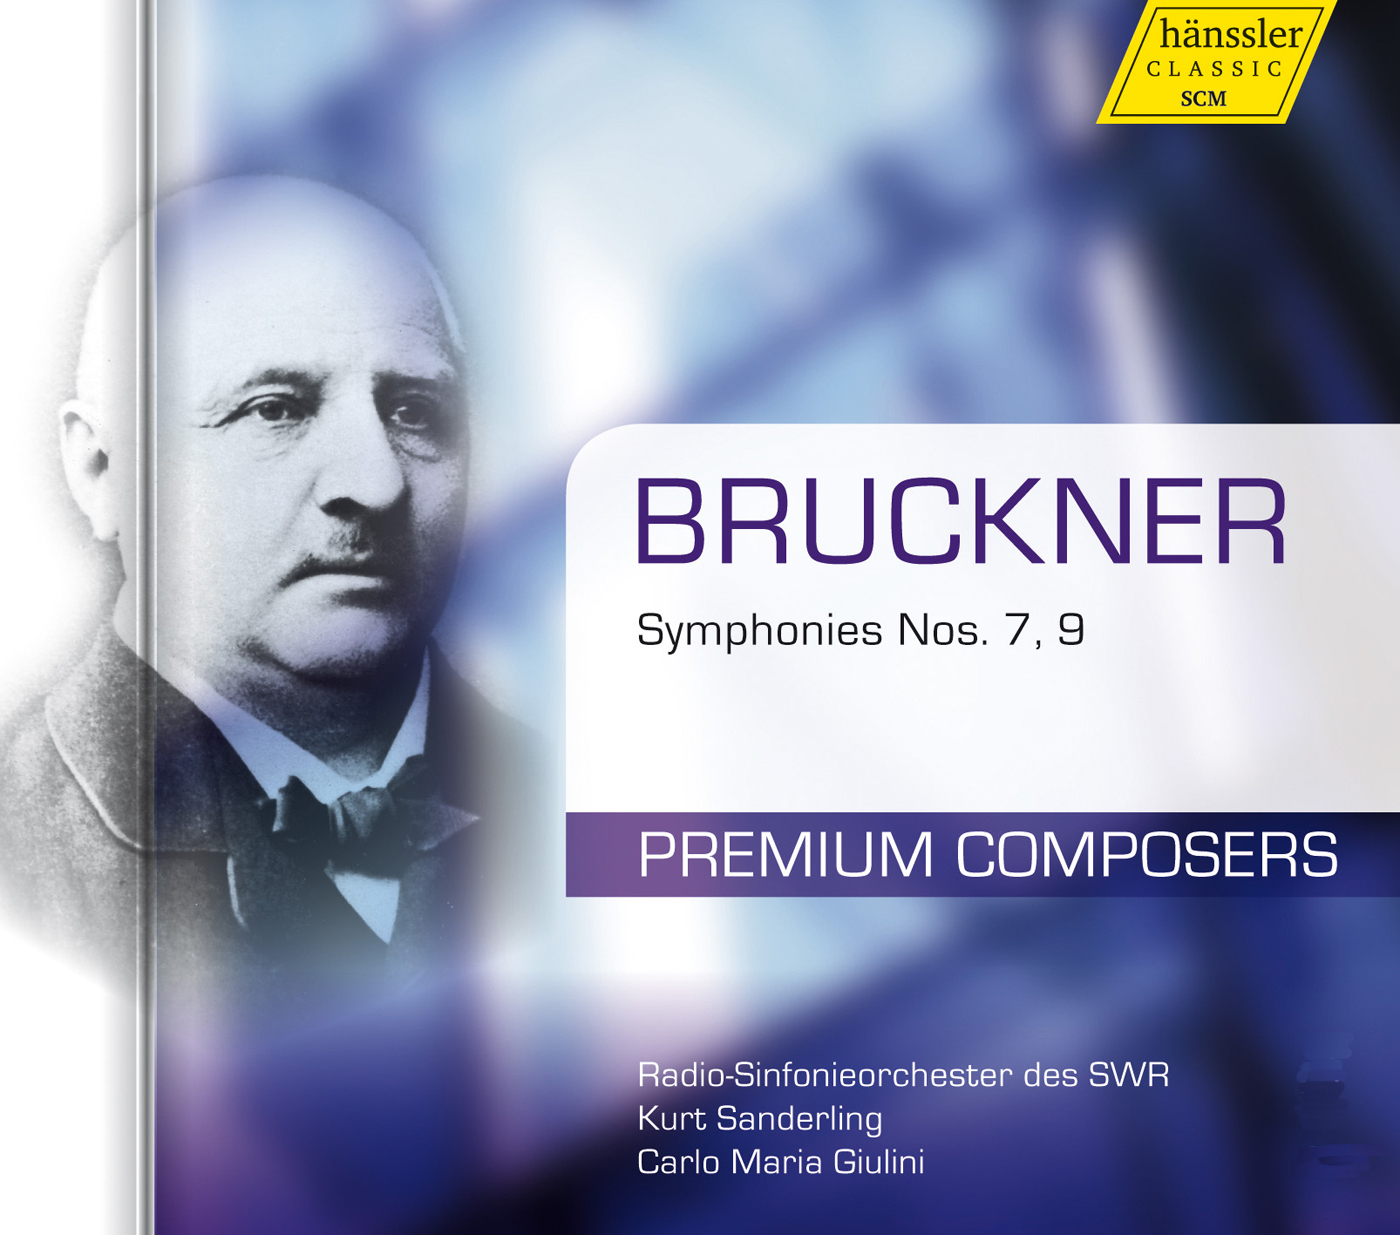 Bruckner Symphony no. 9.